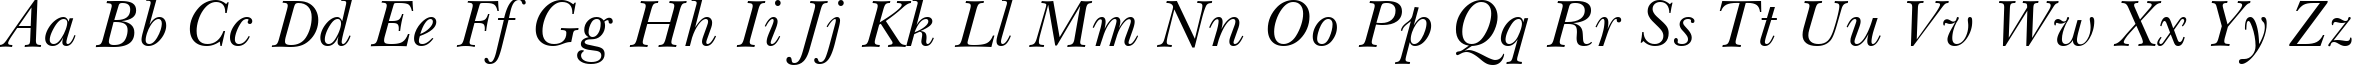 Пример написания английского алфавита шрифтом New Baskerville Italic BT